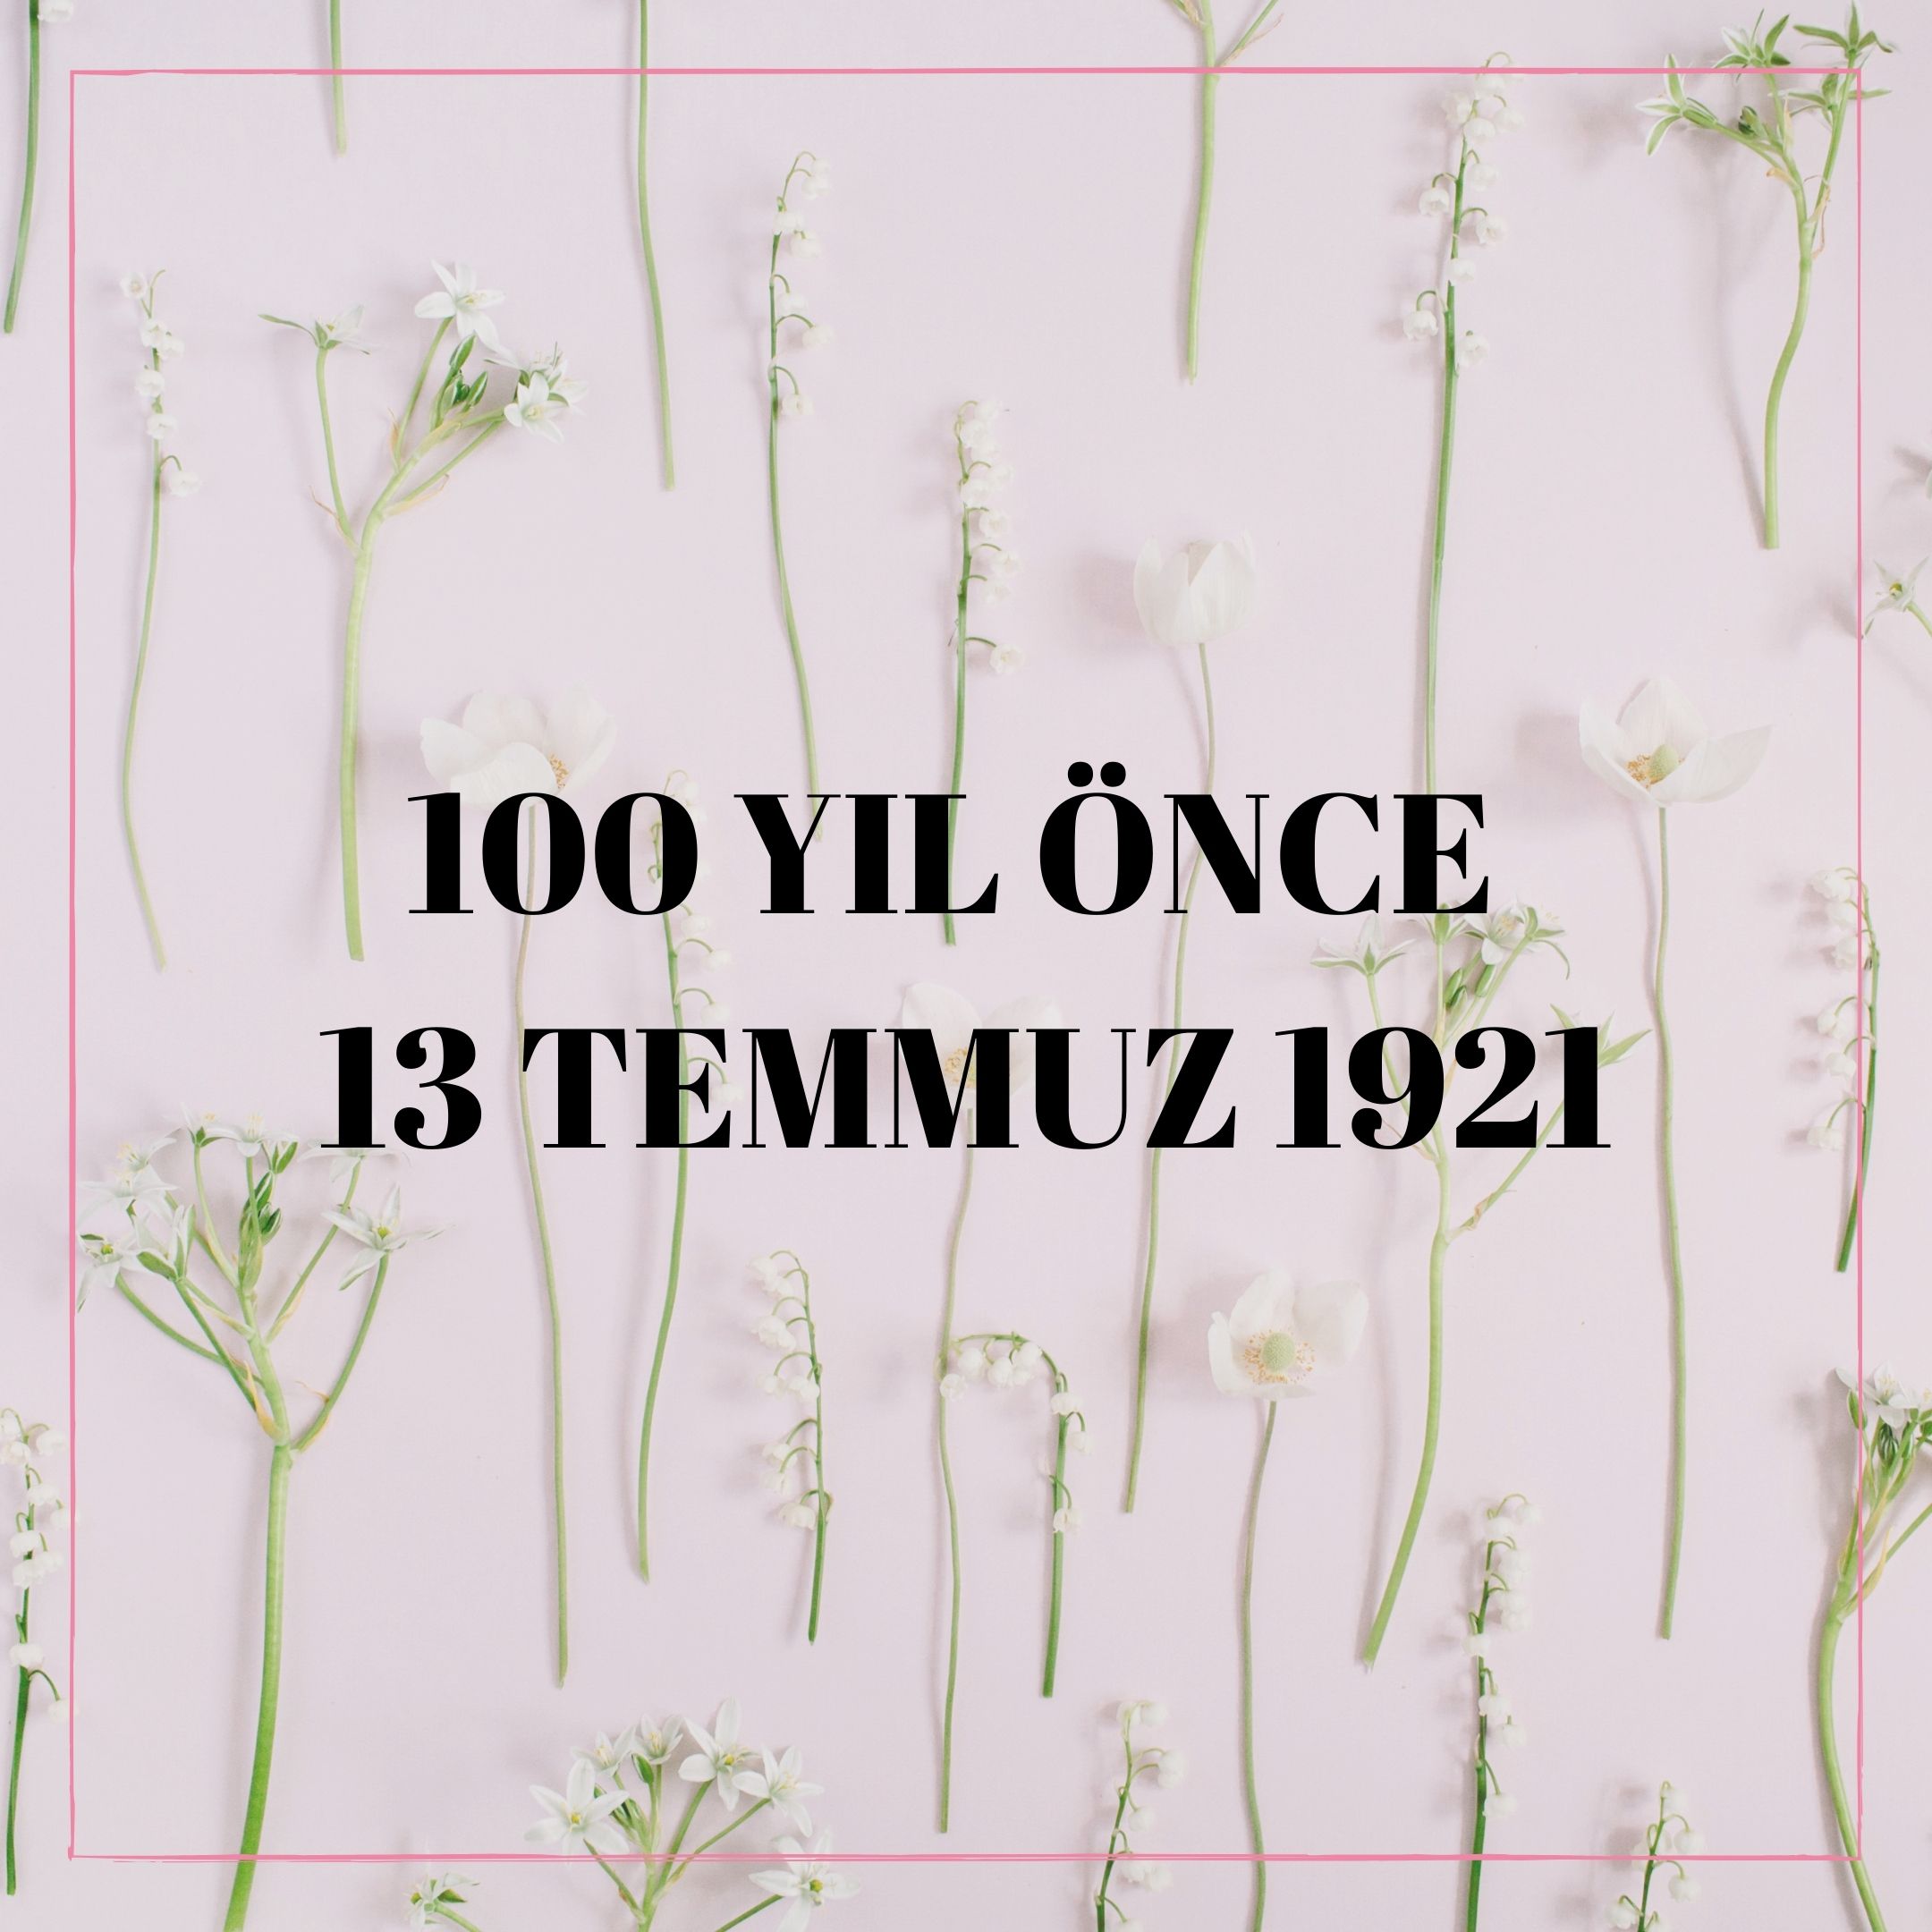 100 YIL ÖNCE 13 TEMMUZ 1921